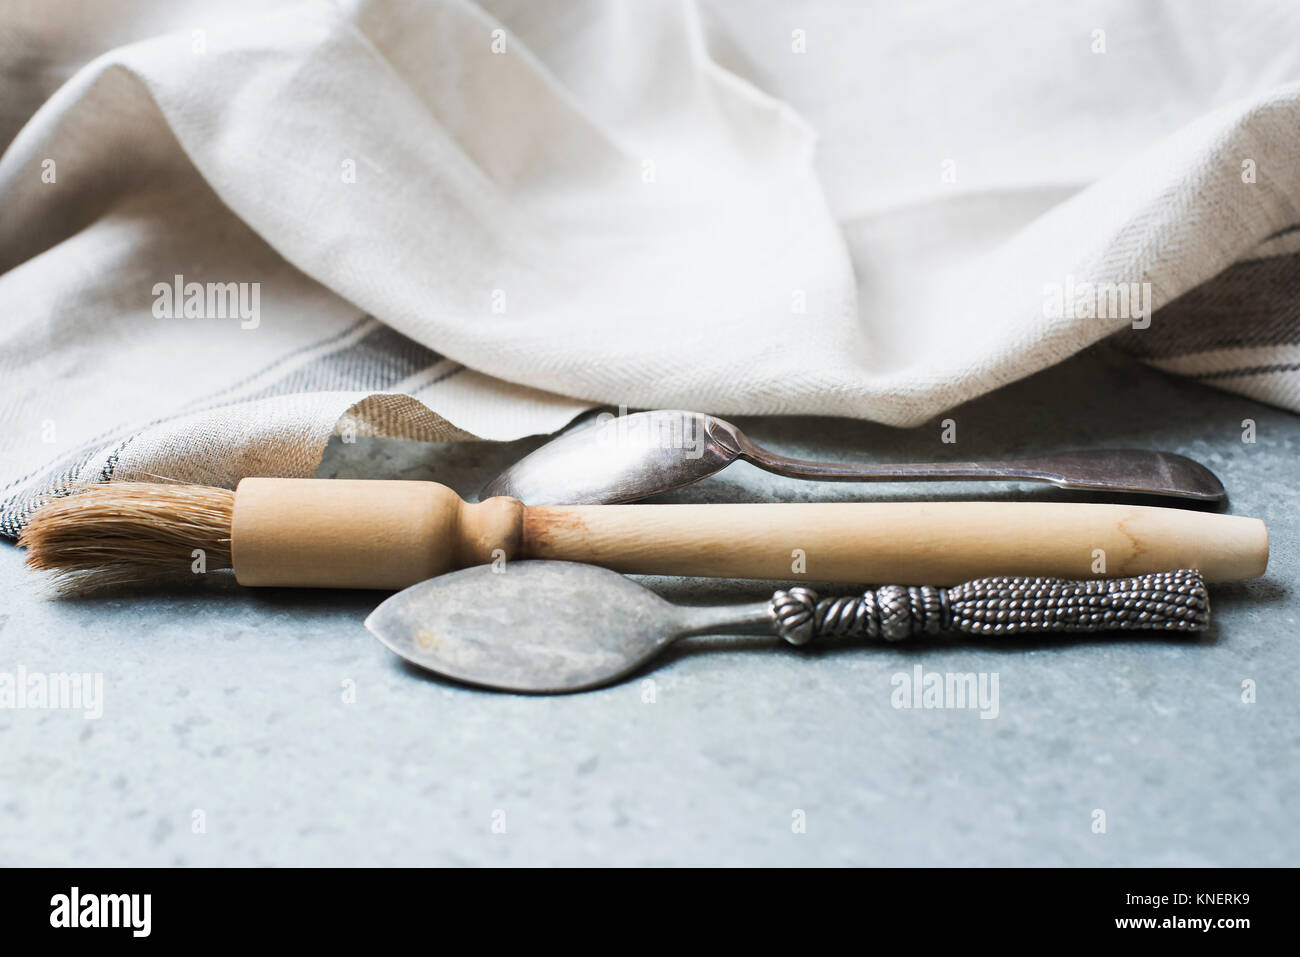 Spazzola di pasticceria e cucchiai sul banco di cucina, close-up Foto Stock